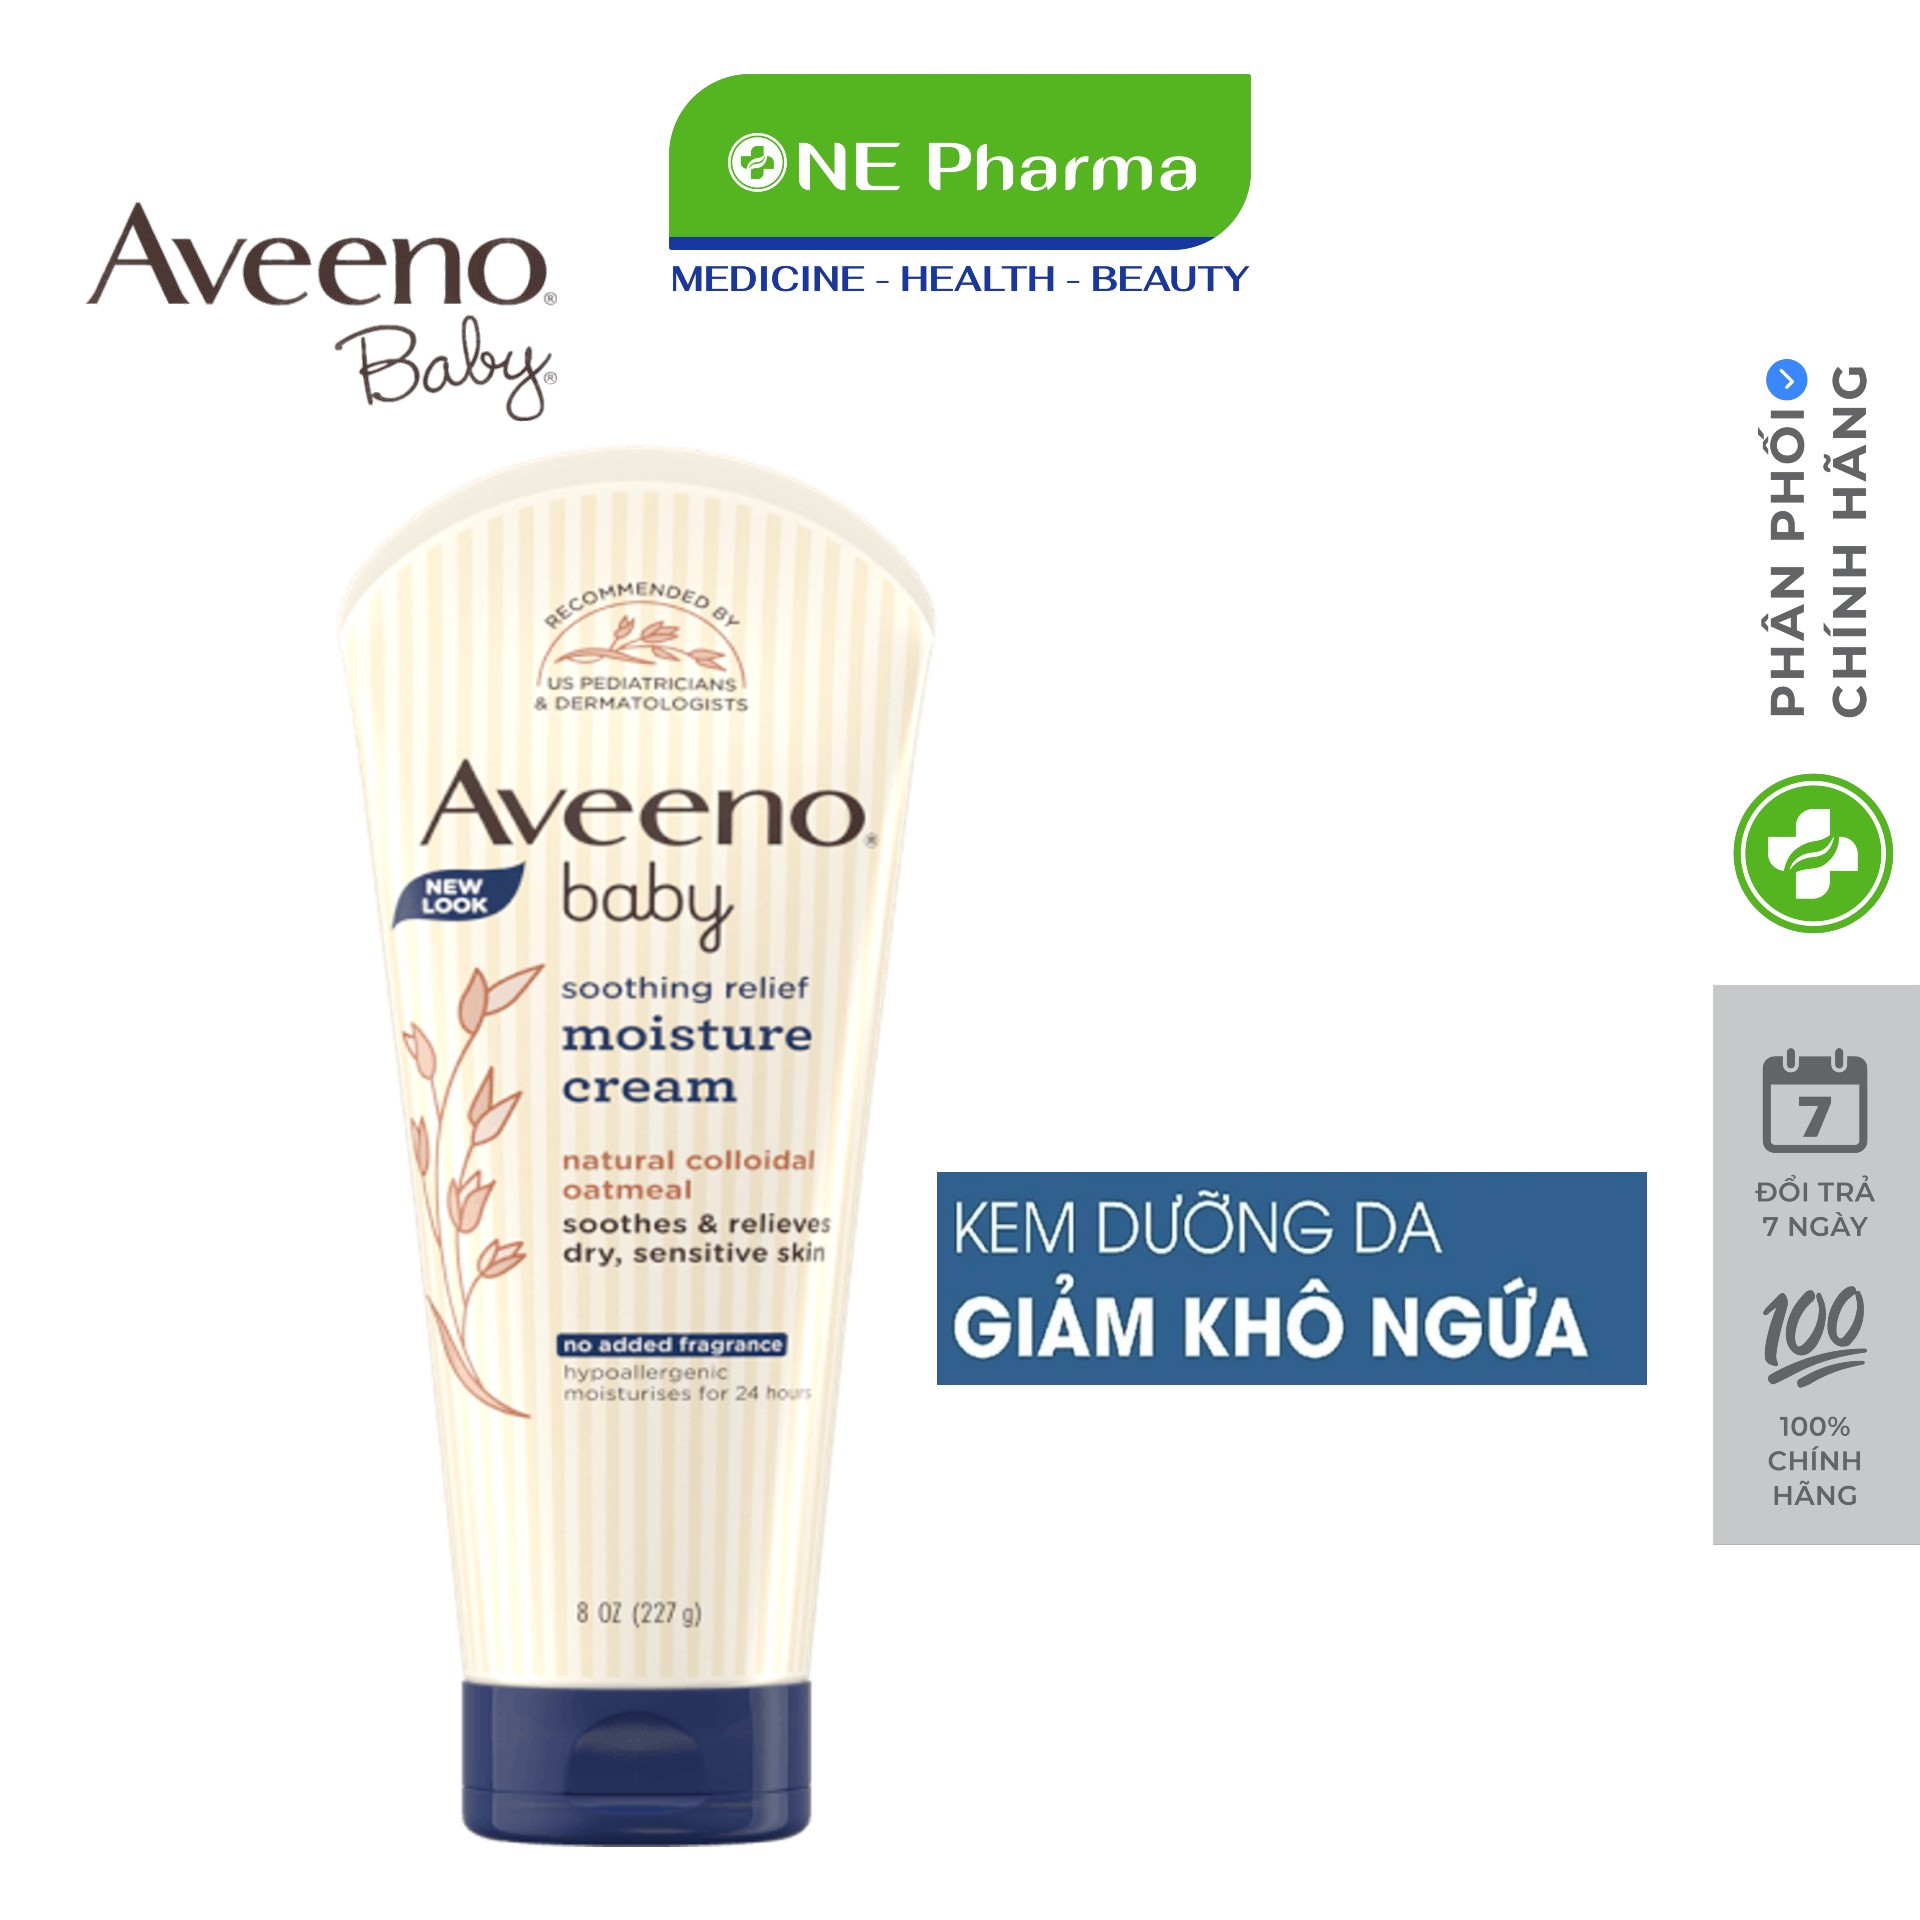 Kem dưỡng Aveeno Baby cho da khô và nhạy cảm 227g